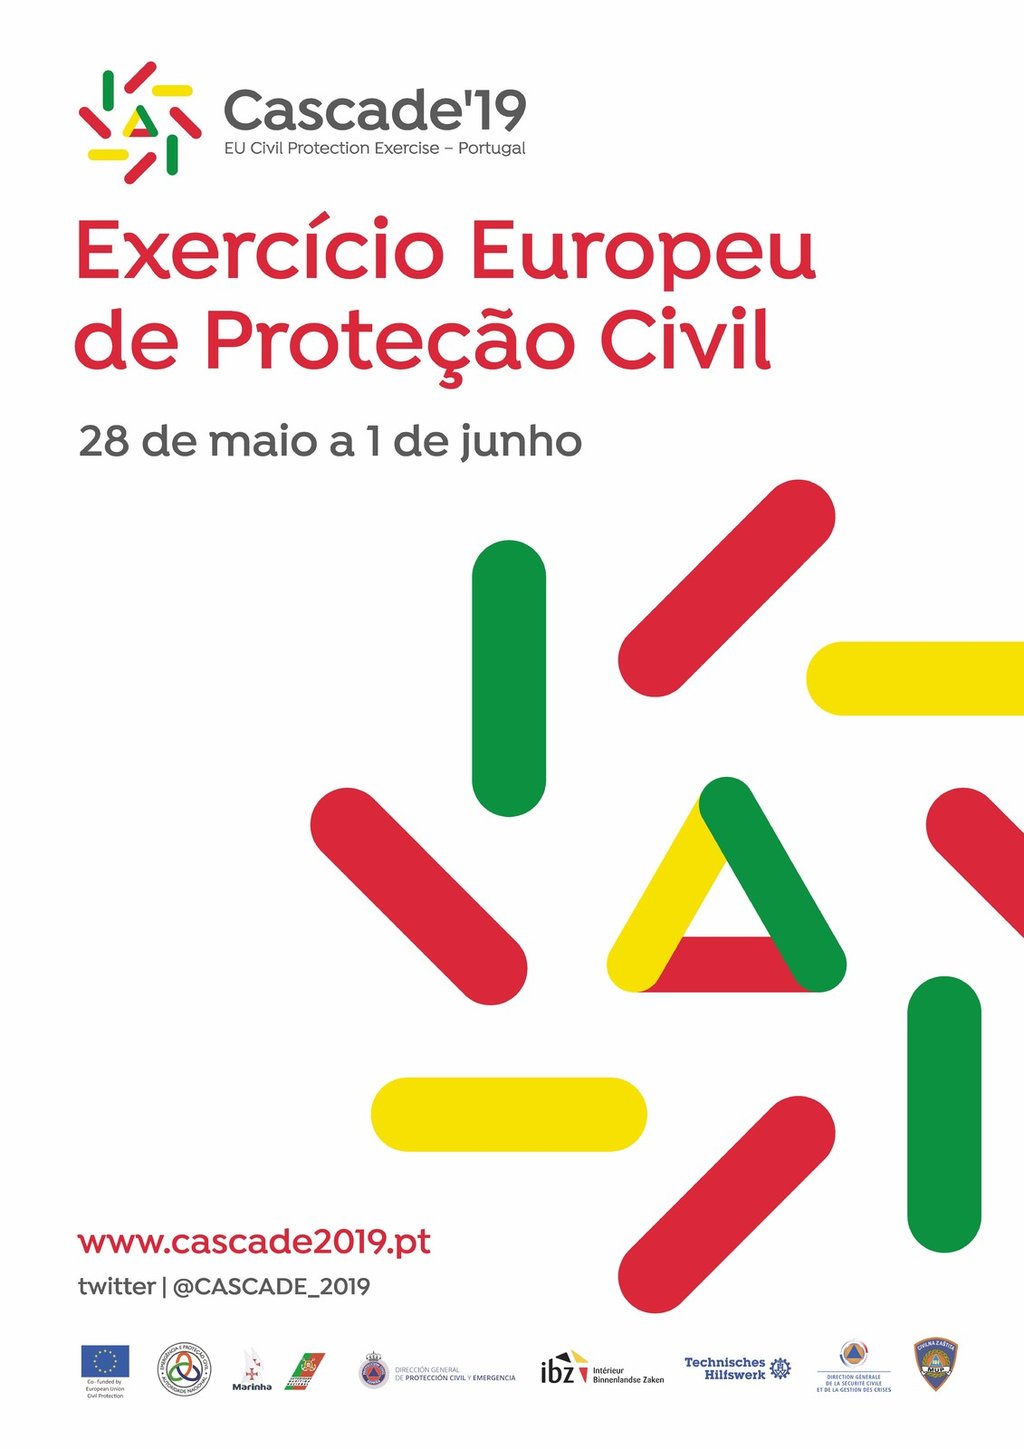 CASCADE’19 – EXERCÍCIO EUROPEU DE PROTEÇÃO CIVIL